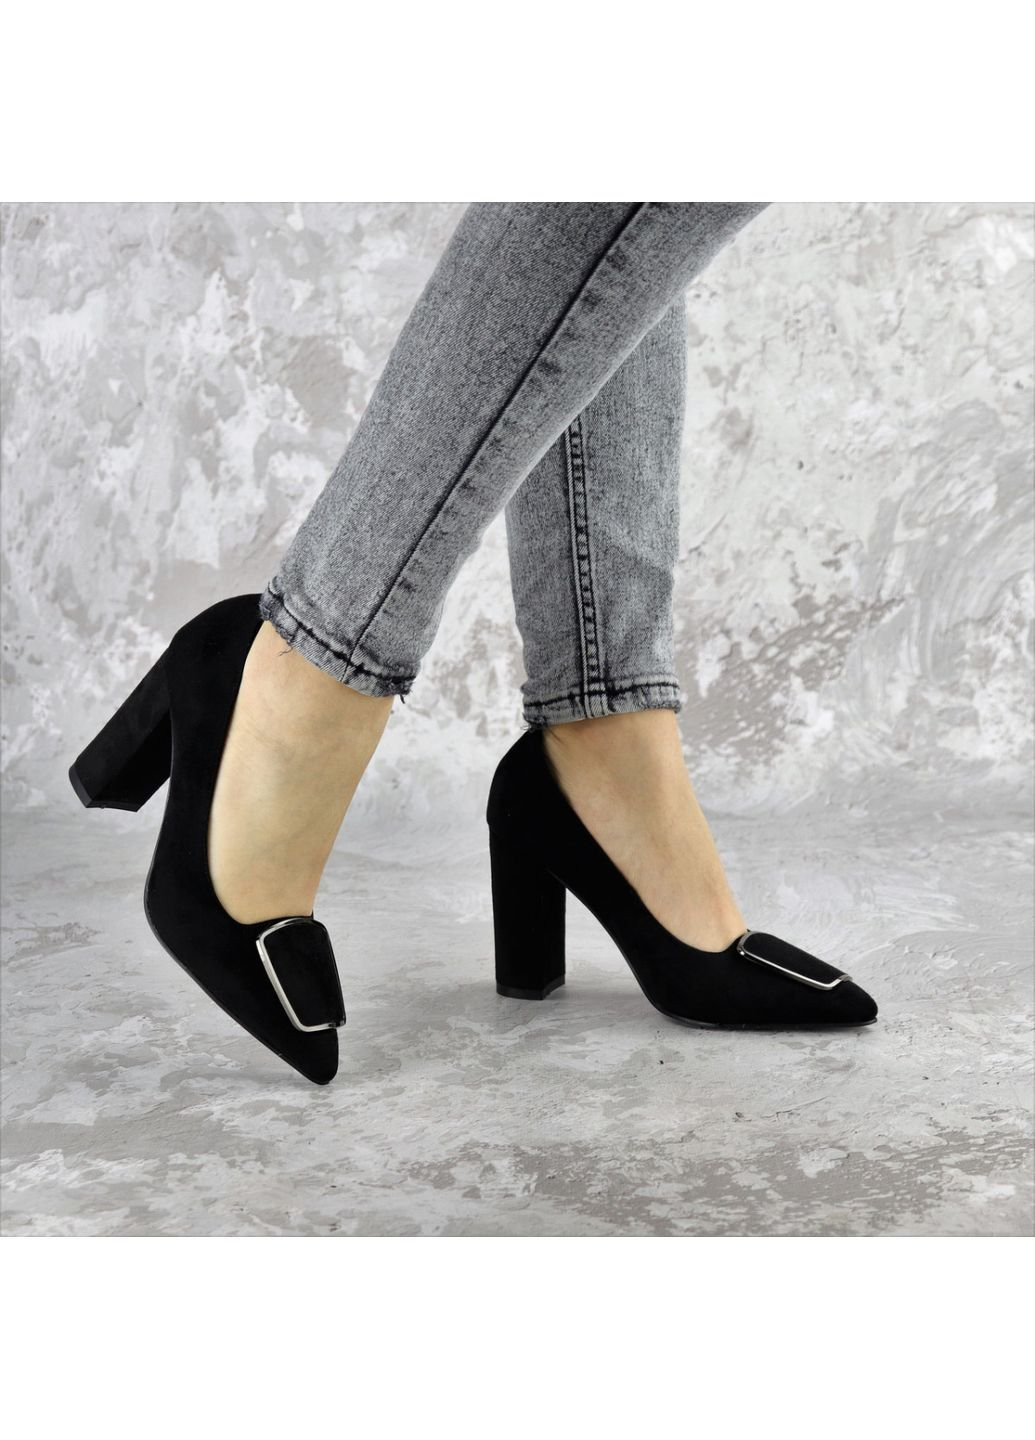 Туфли женские на каблуке Mugsley 2376 39 25 см Черный Fashion